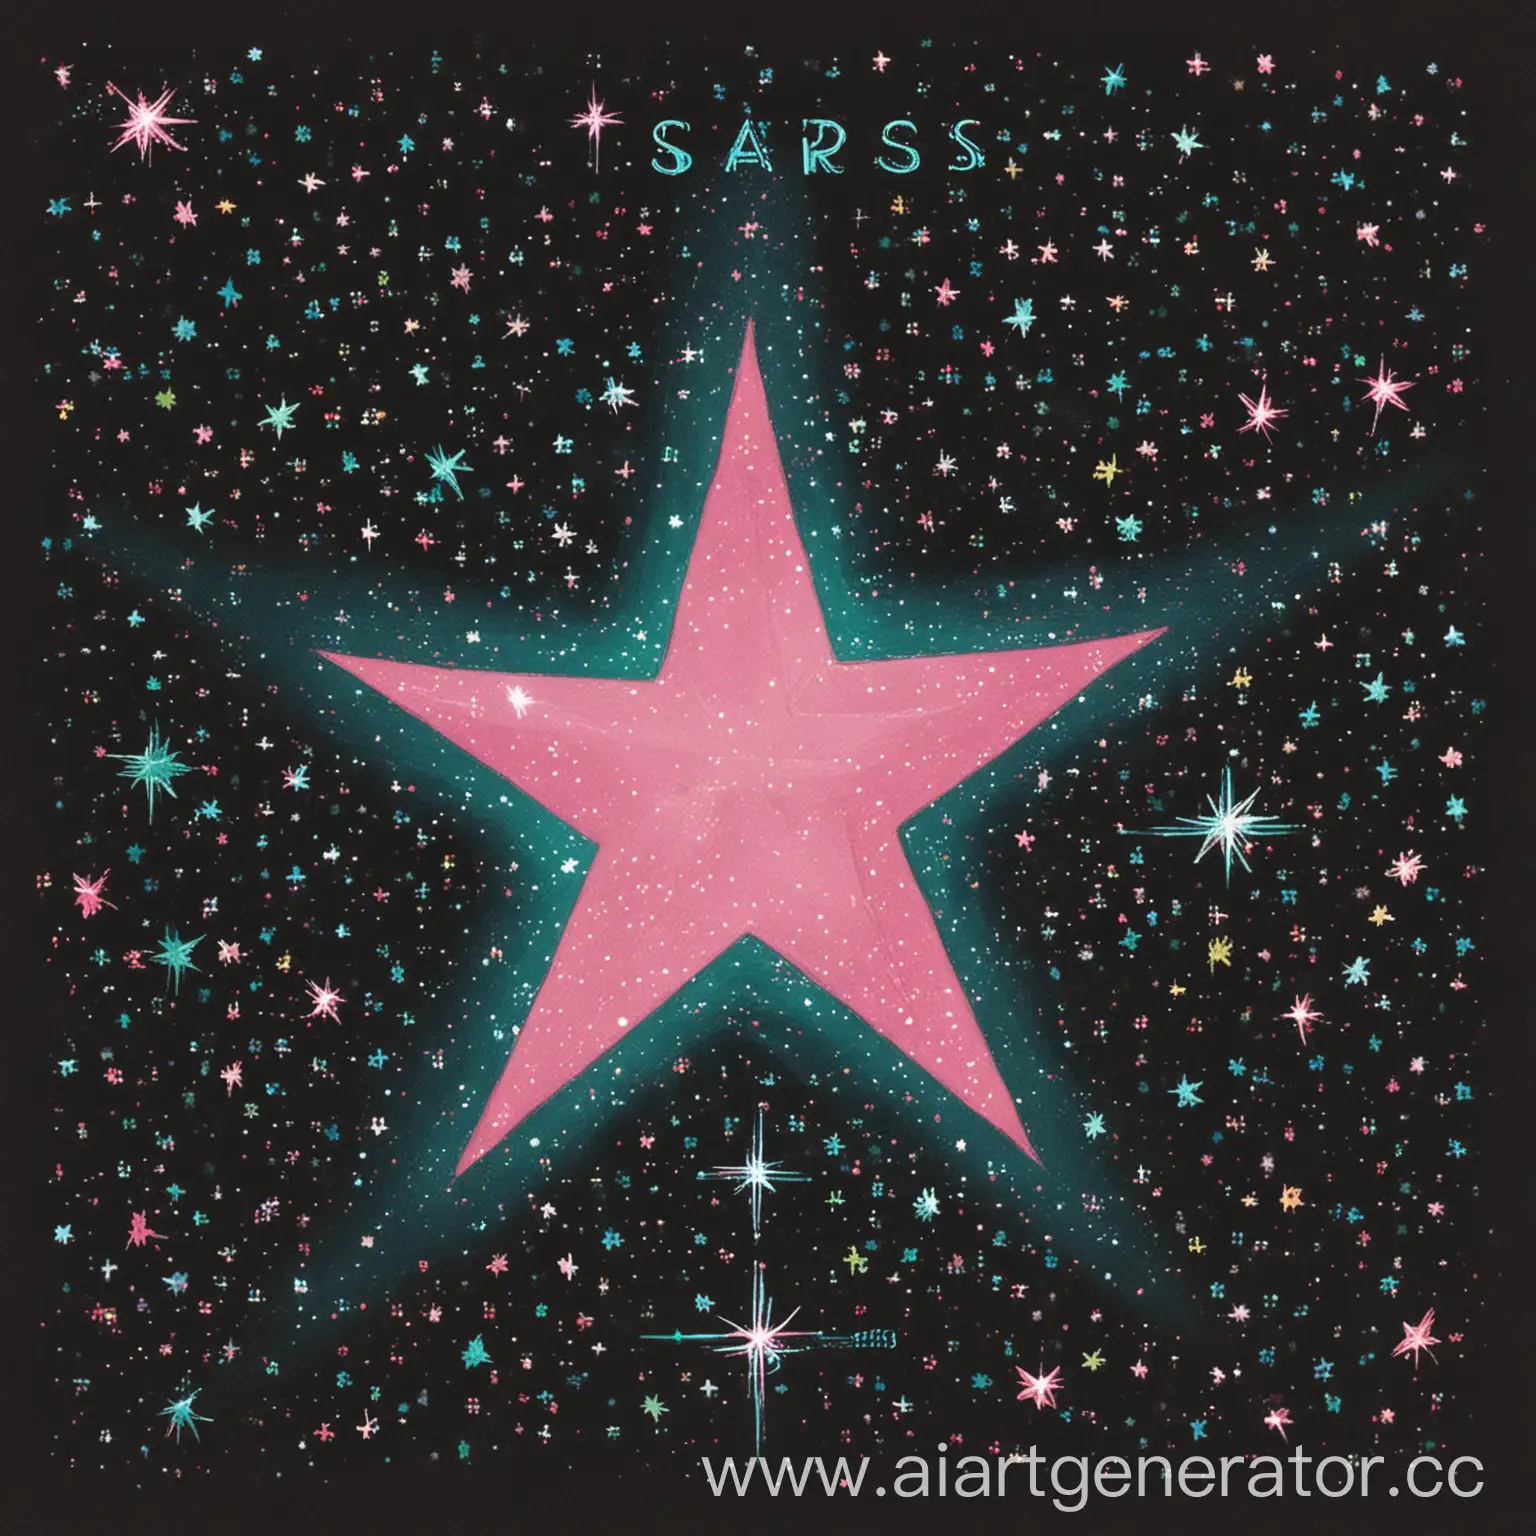 нарисуй обложку для альбома название " Stars"
Звезда в розовых или в сине-зеленых тонах по середине обложки.Маленькие мерцающие звездочки на заднем плане